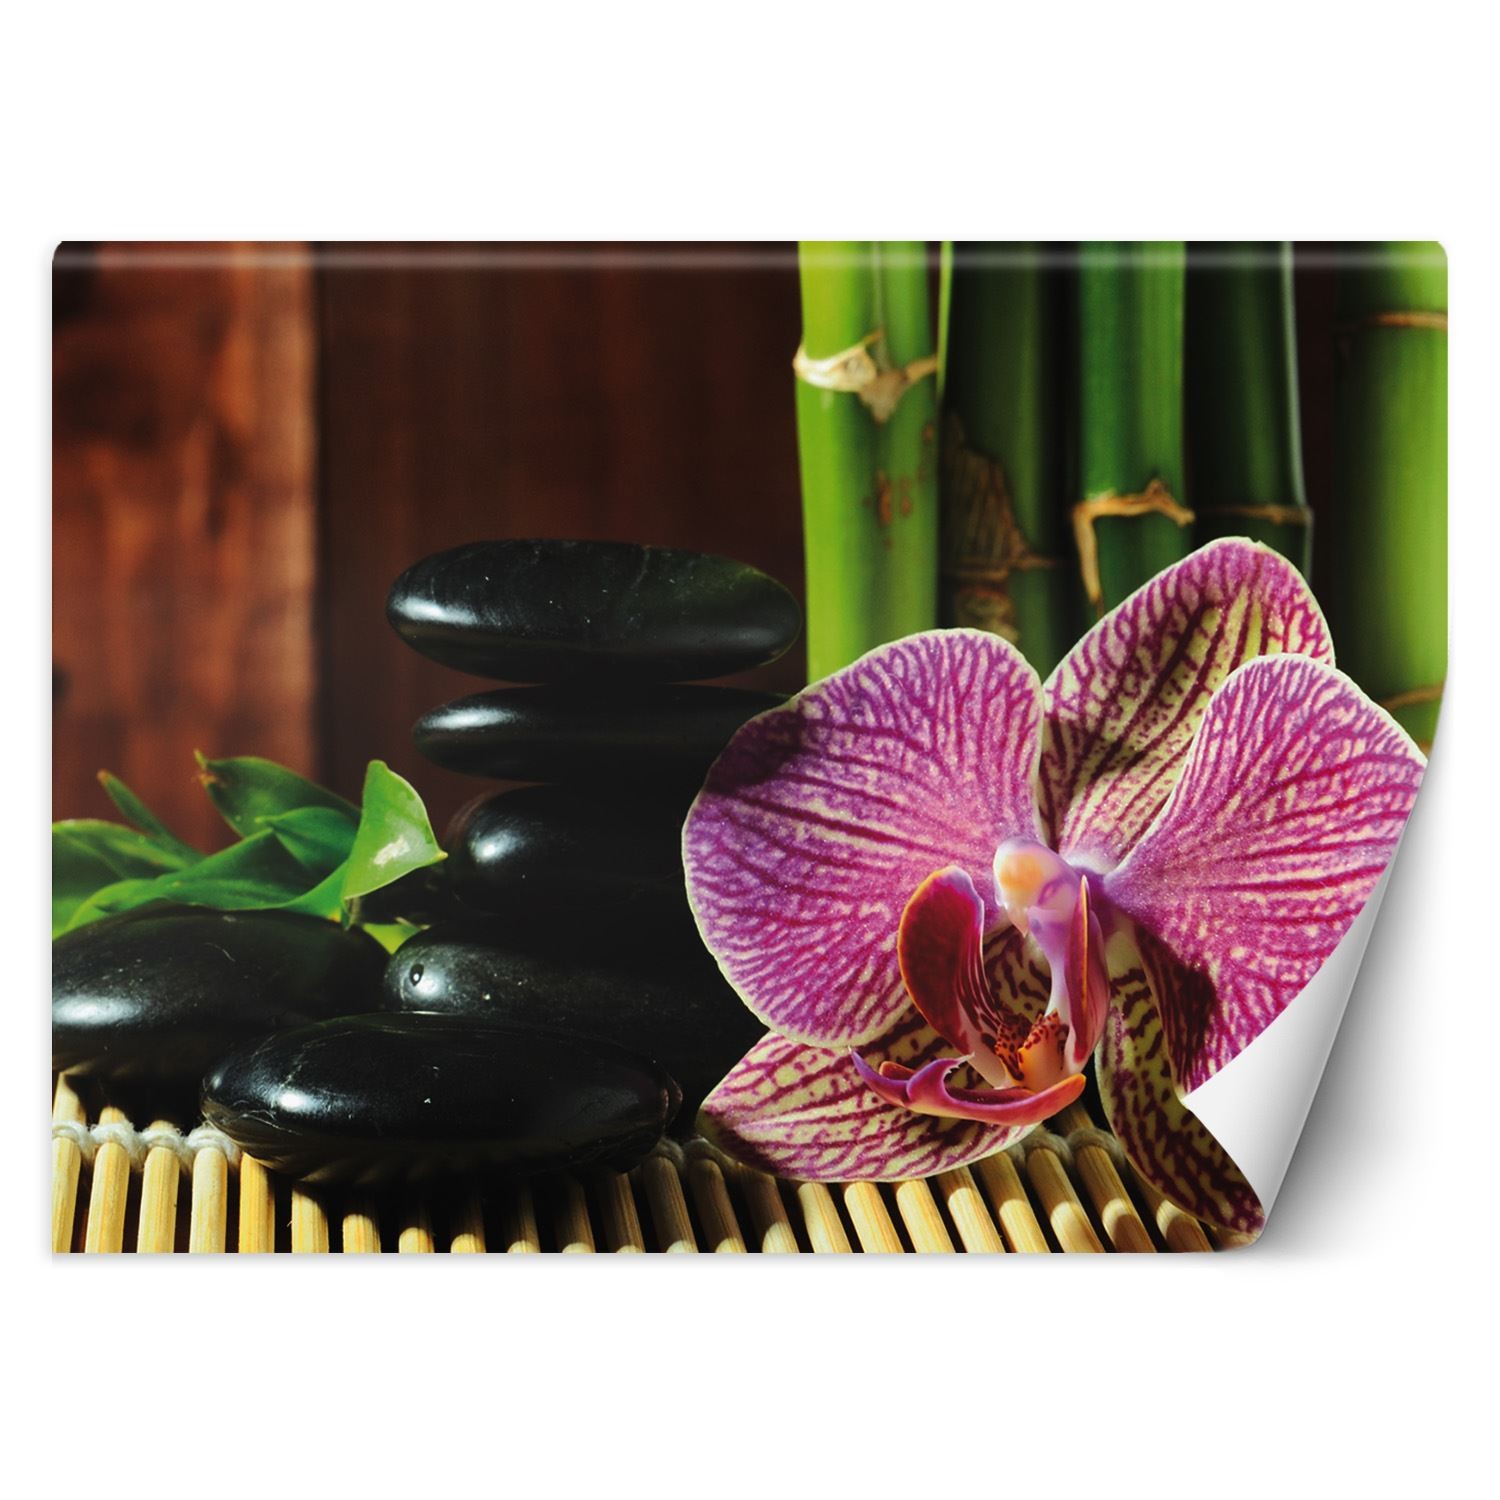 Trend24 – Behang – Orchid – Vliesbehang – Fotobehang – Behang Woonkamer – 350x245x2 cm – Incl. behanglijm